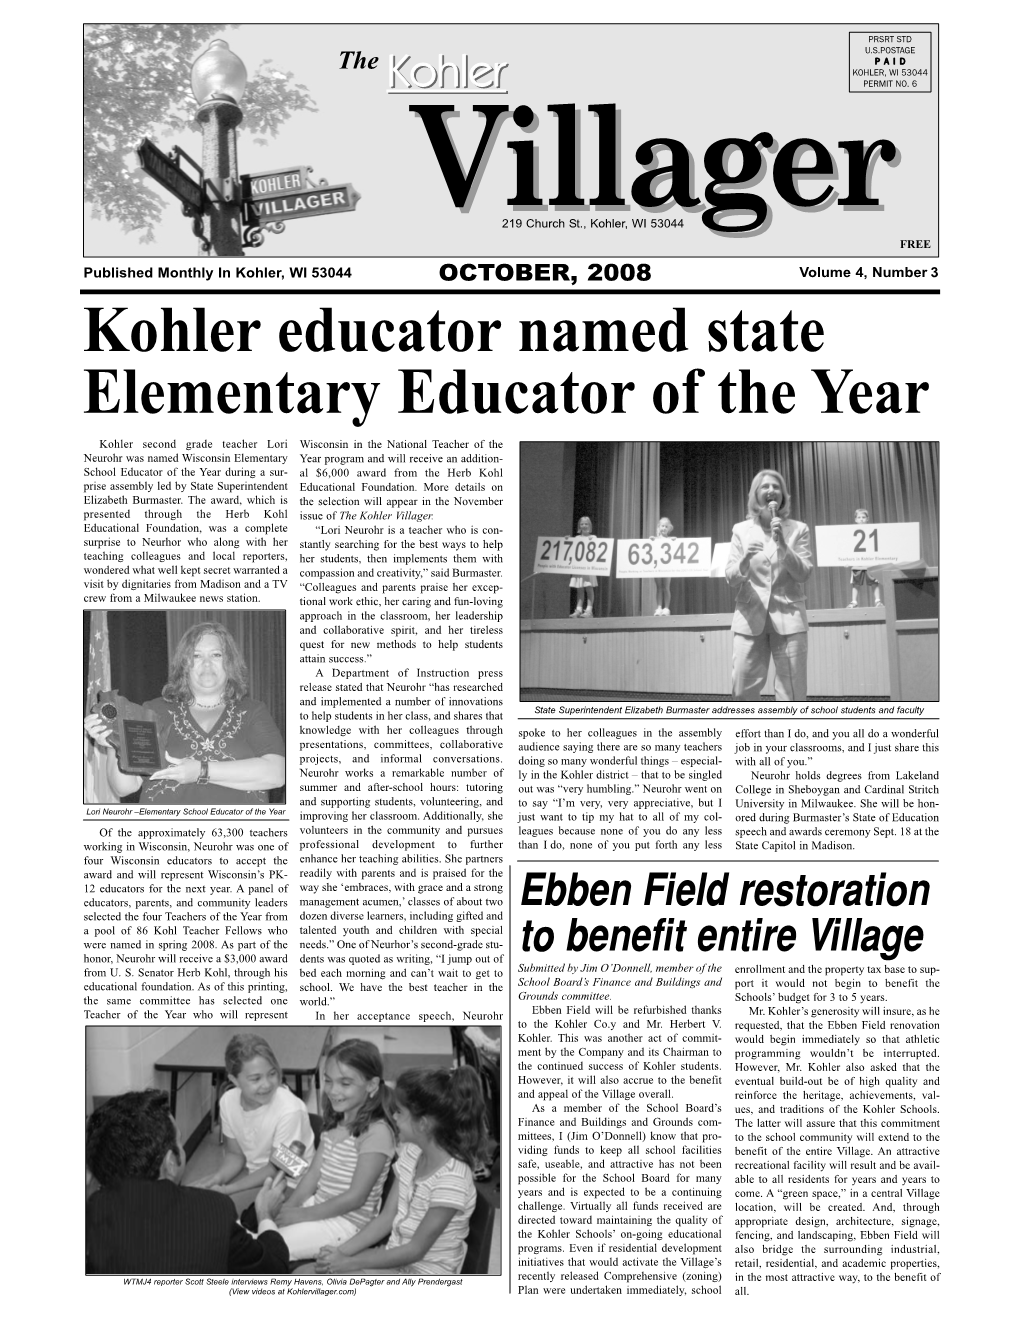 Kohler Educator Named State Elementary Educator of the Year